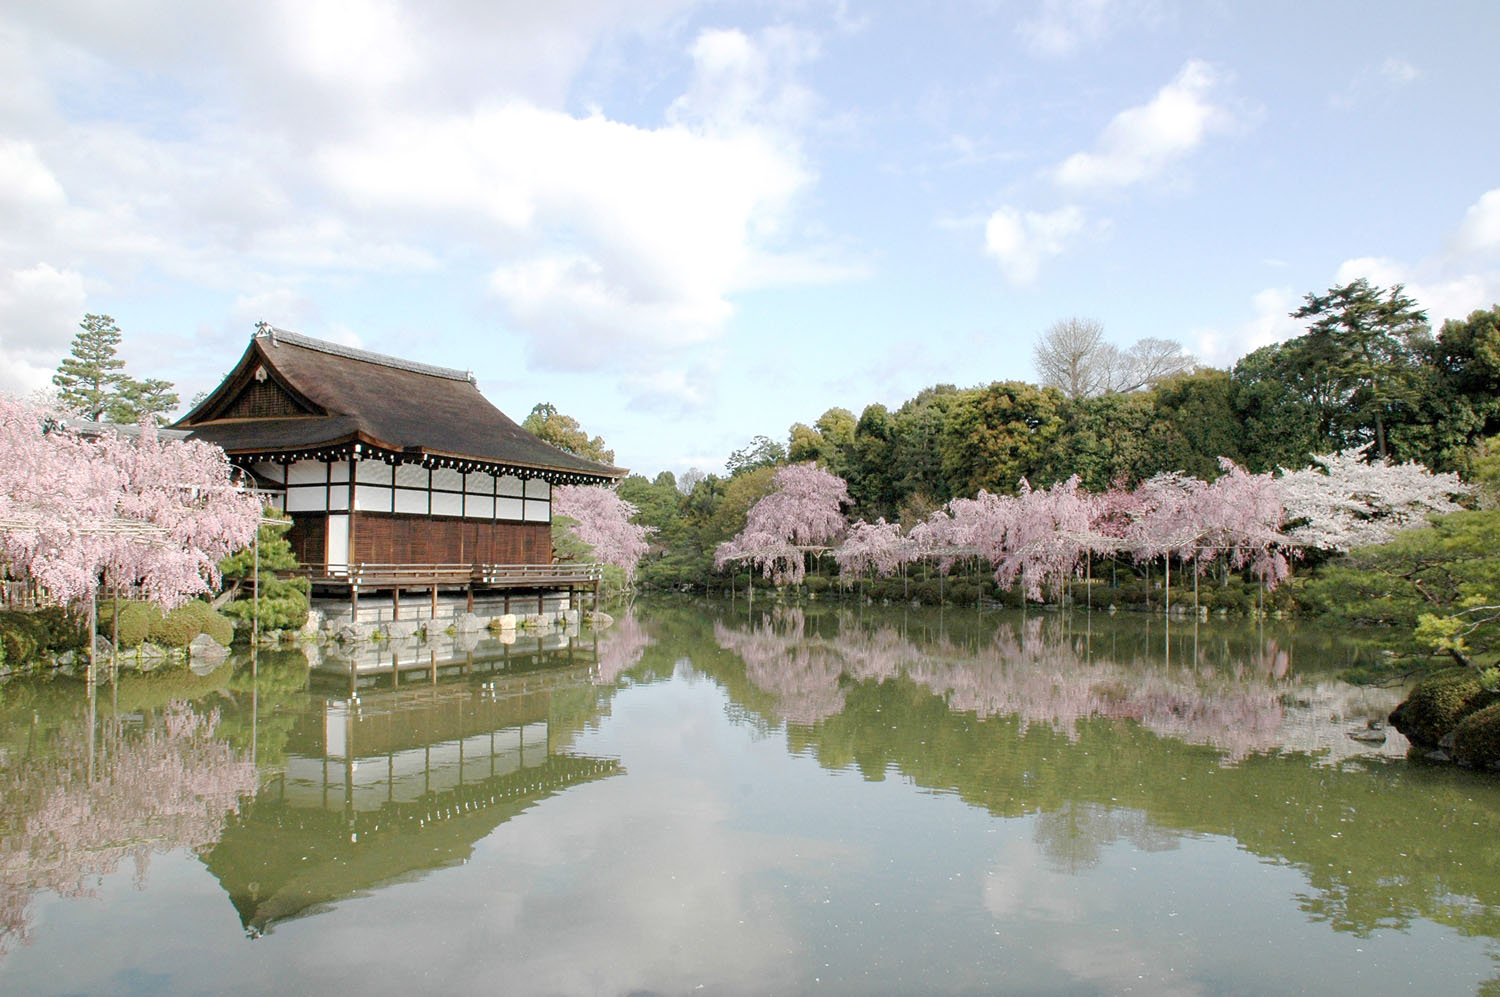 春の紅枝垂れ桜、初夏のボタンやハナショウブなどが美しい池泉回遊式庭園。